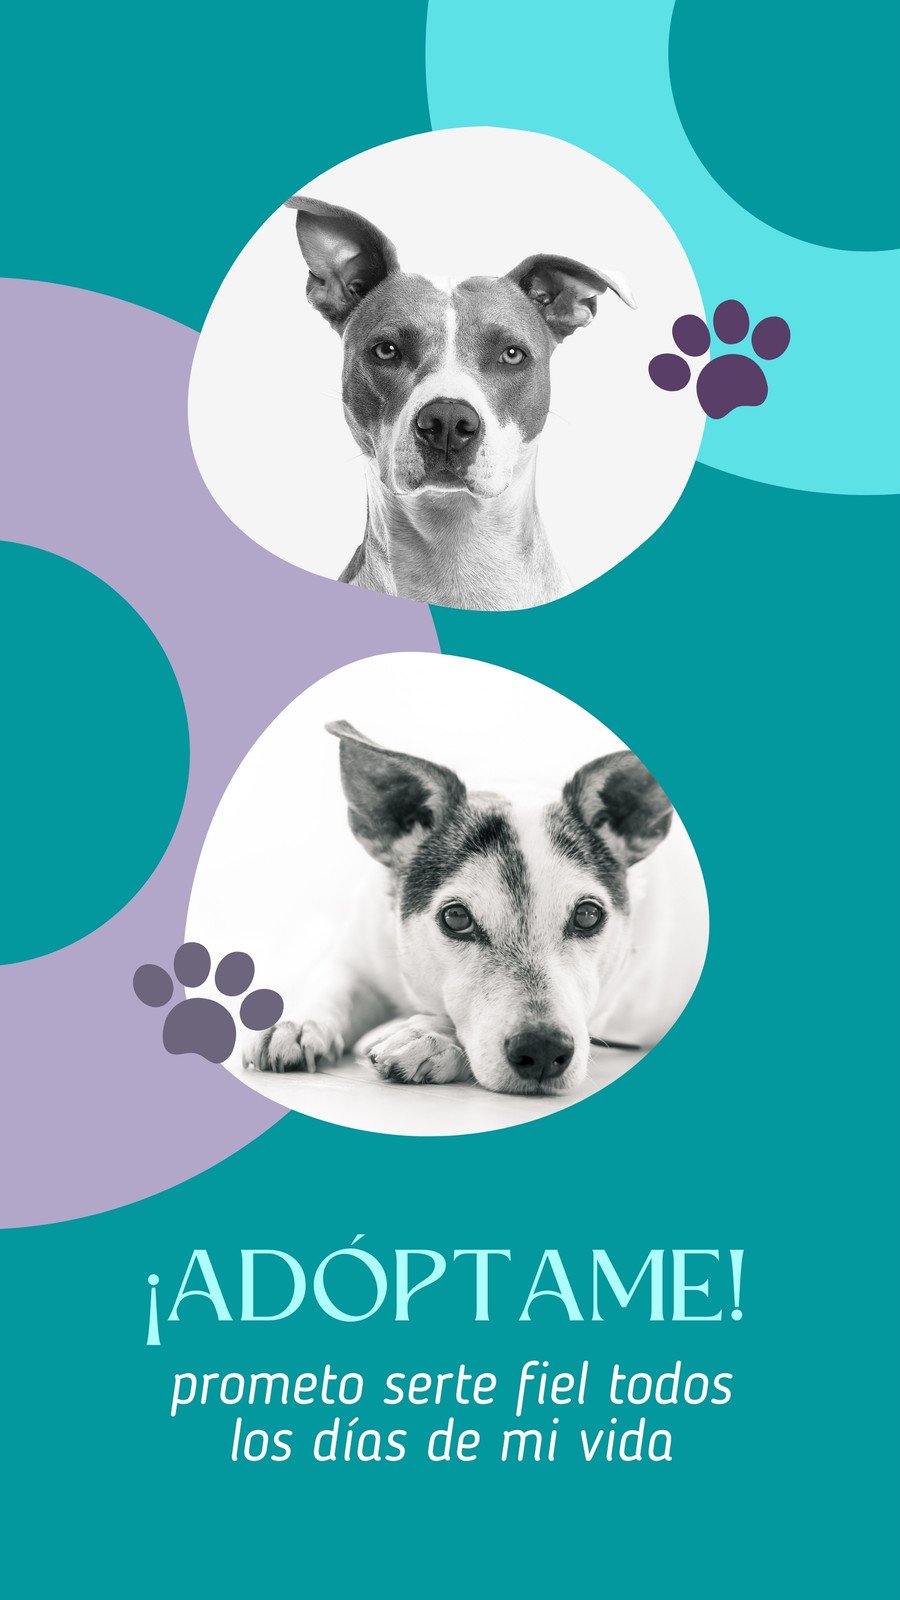 Plantillas de perros gratis y personalizables - Canva